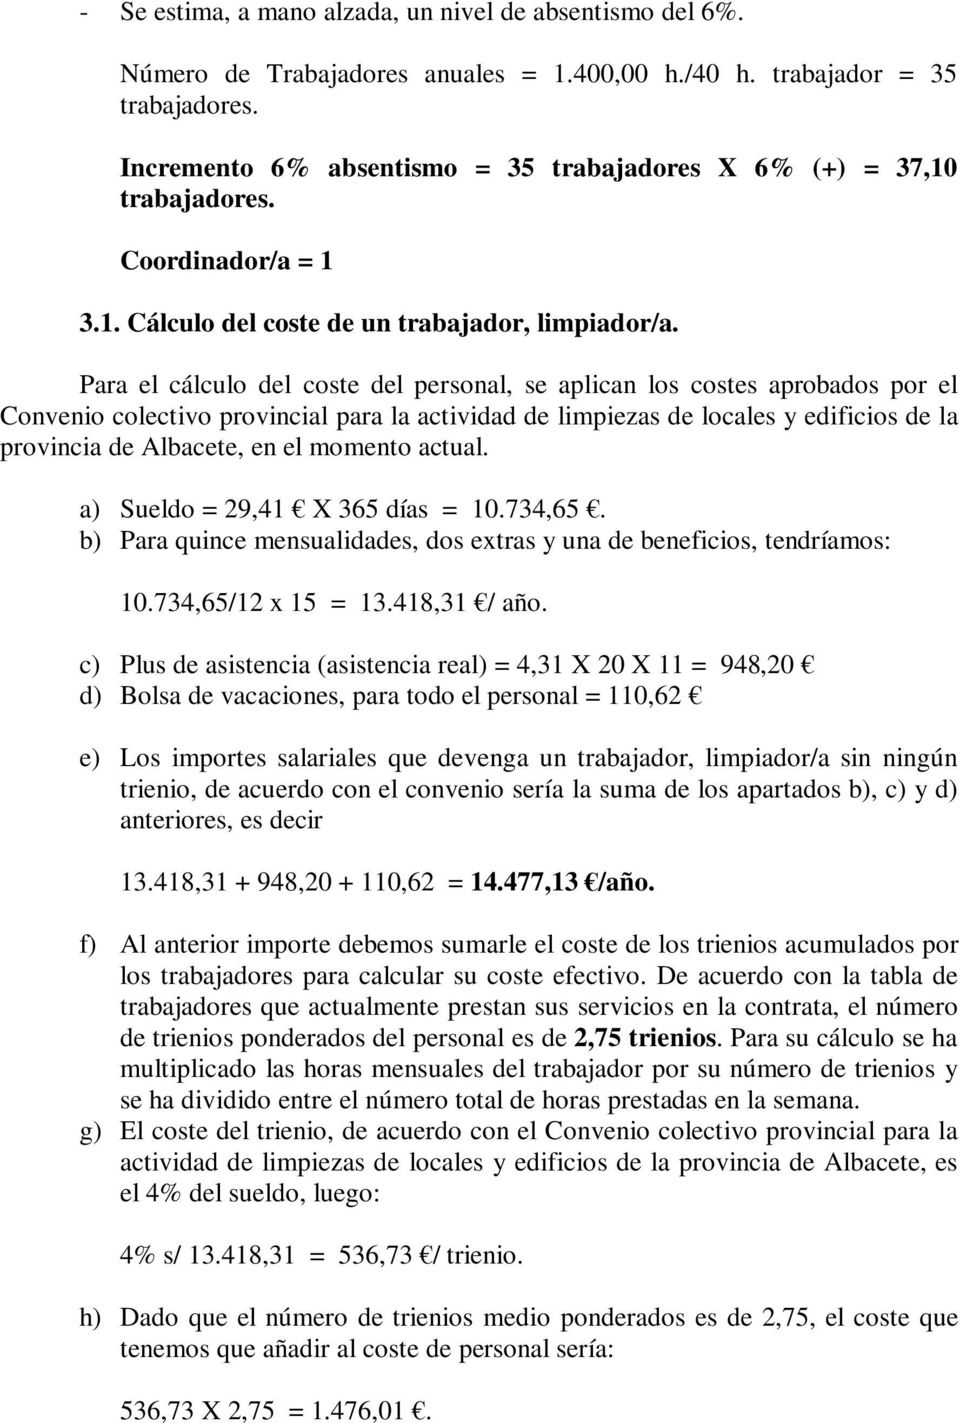 Para el cálculo del coste del personal, se aplican los costes aprobados por el Convenio colectivo provincial para la actividad de limpiezas de locales y edificios de la provincia de Albacete, en el